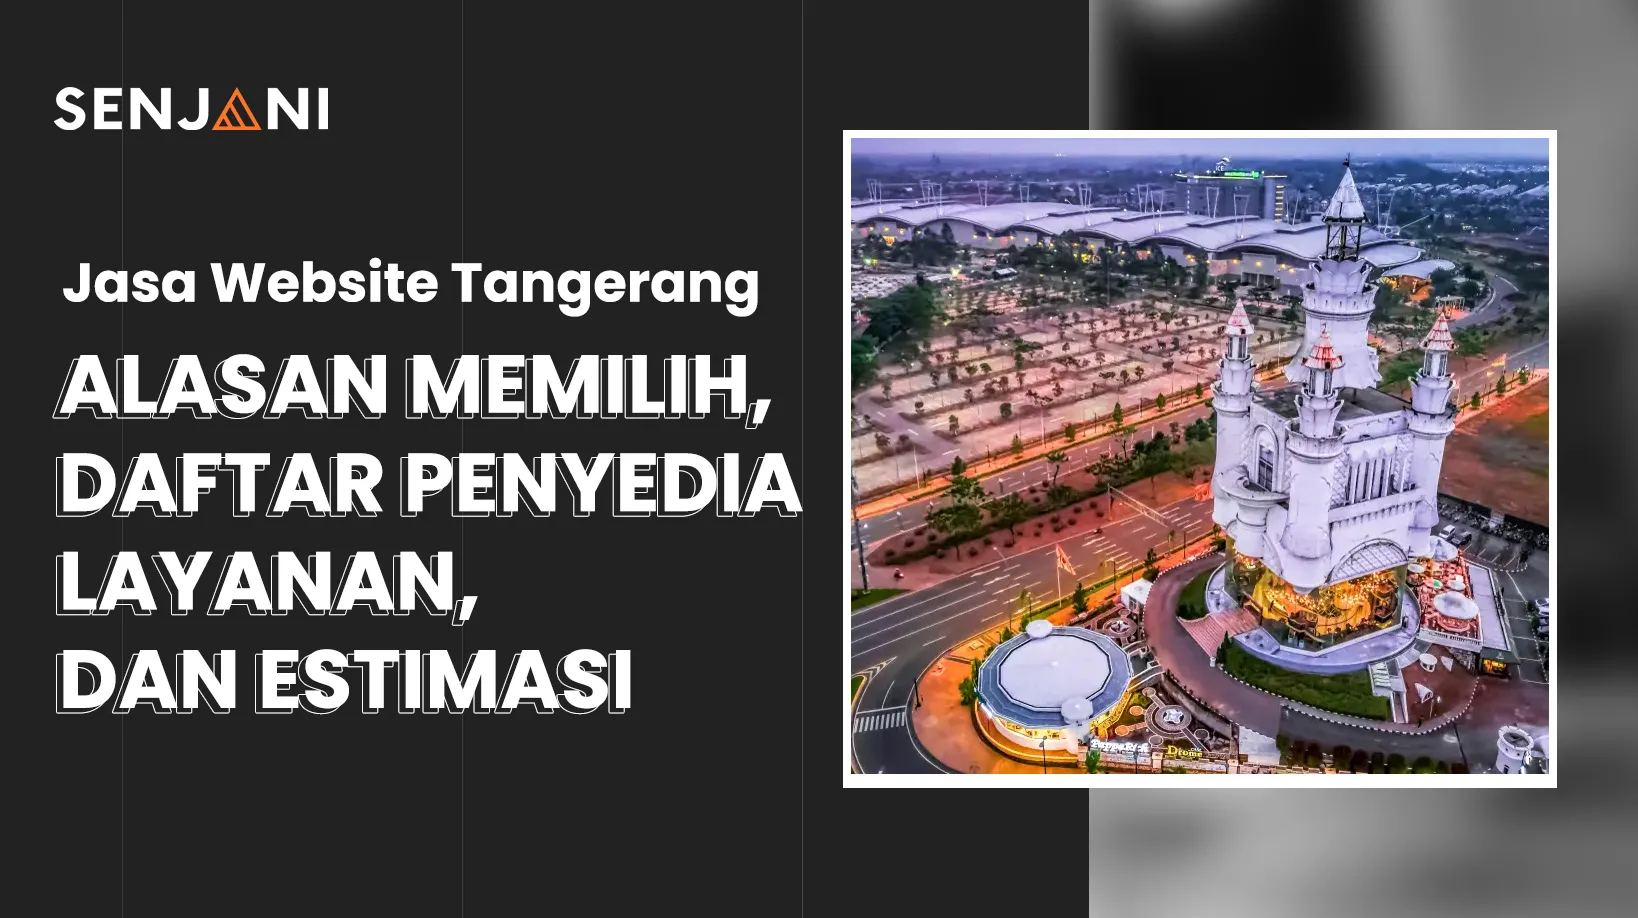 Jasa Website Tangerang: Alasan Memilih, Daftar Penyedia Layanan, dan Estimasi